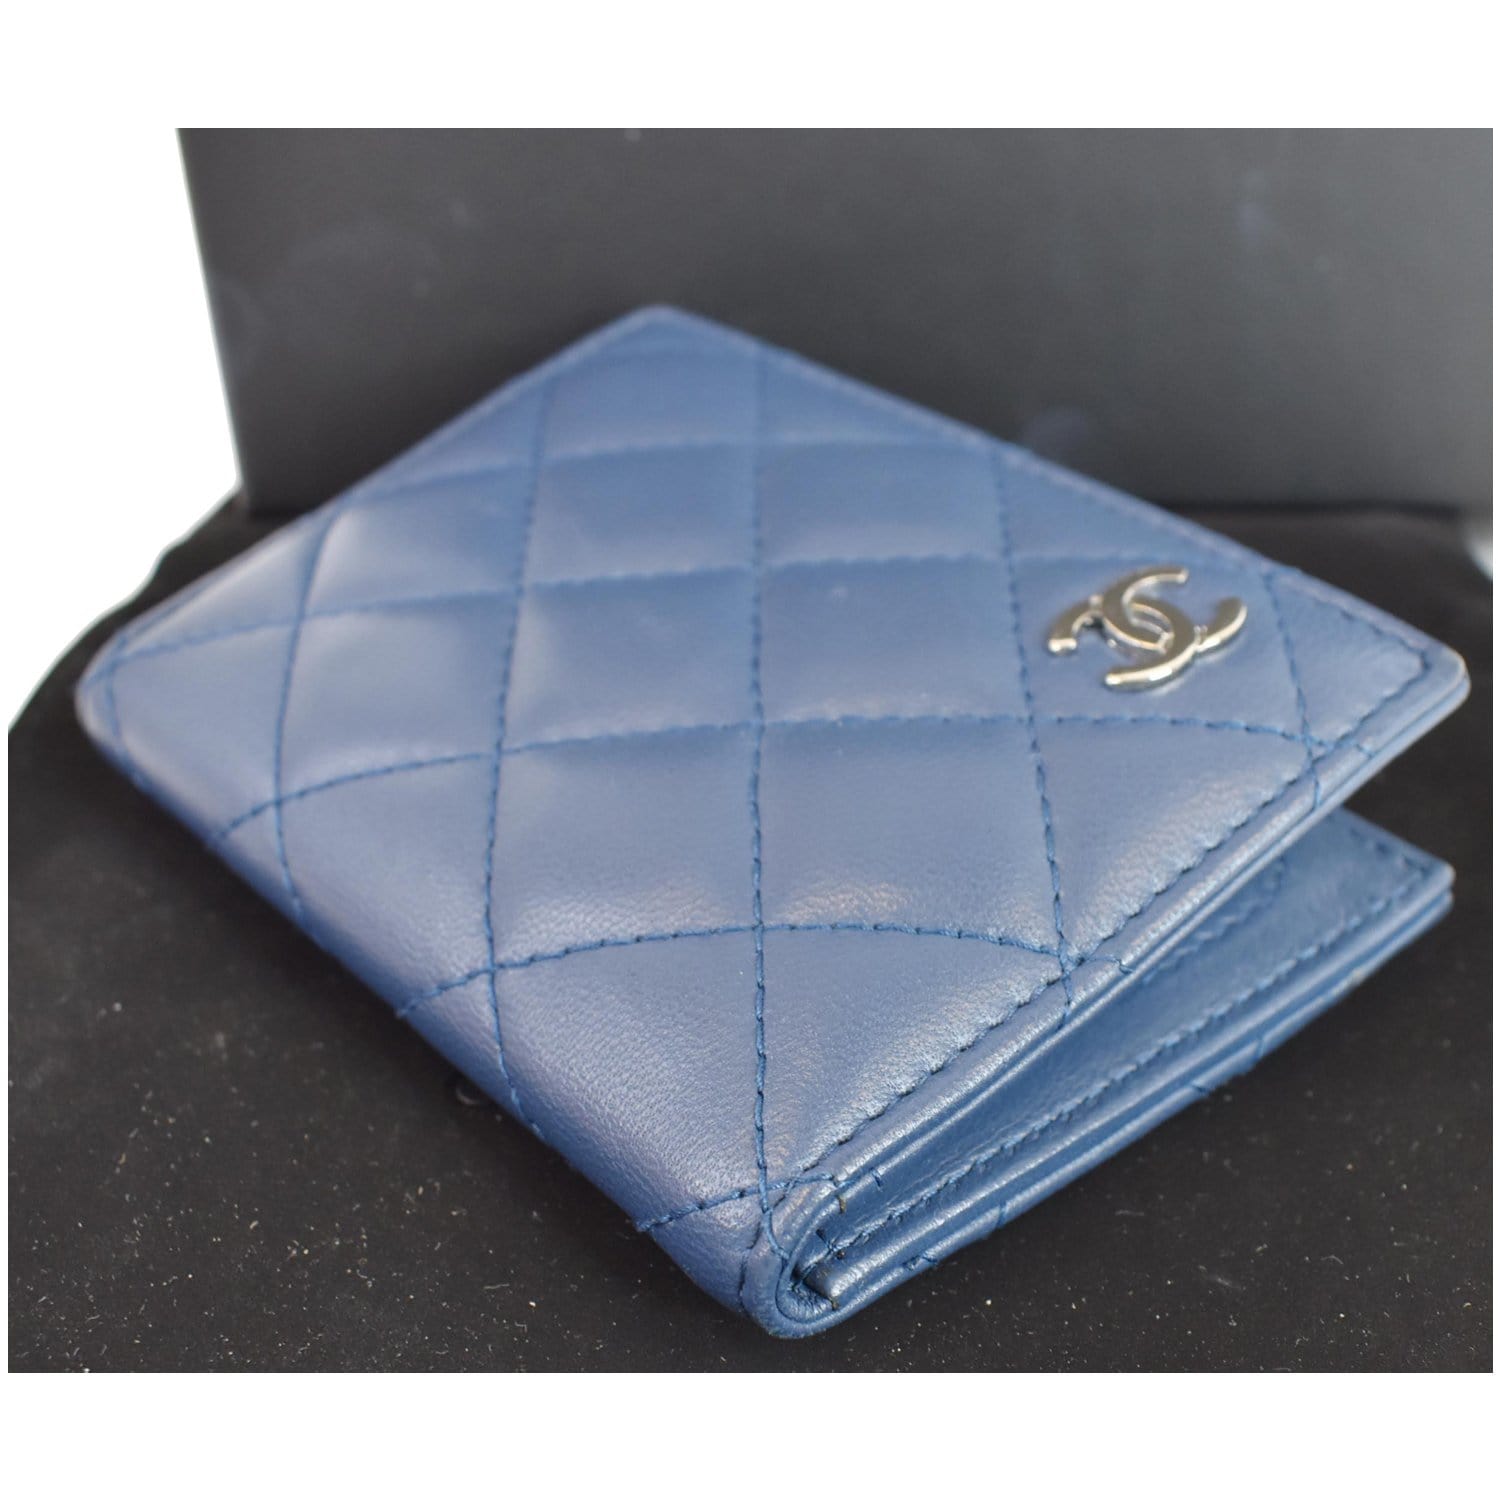 Chanel Long Purse, Women's Fashion, Bags & Wallets, Wallets & Card